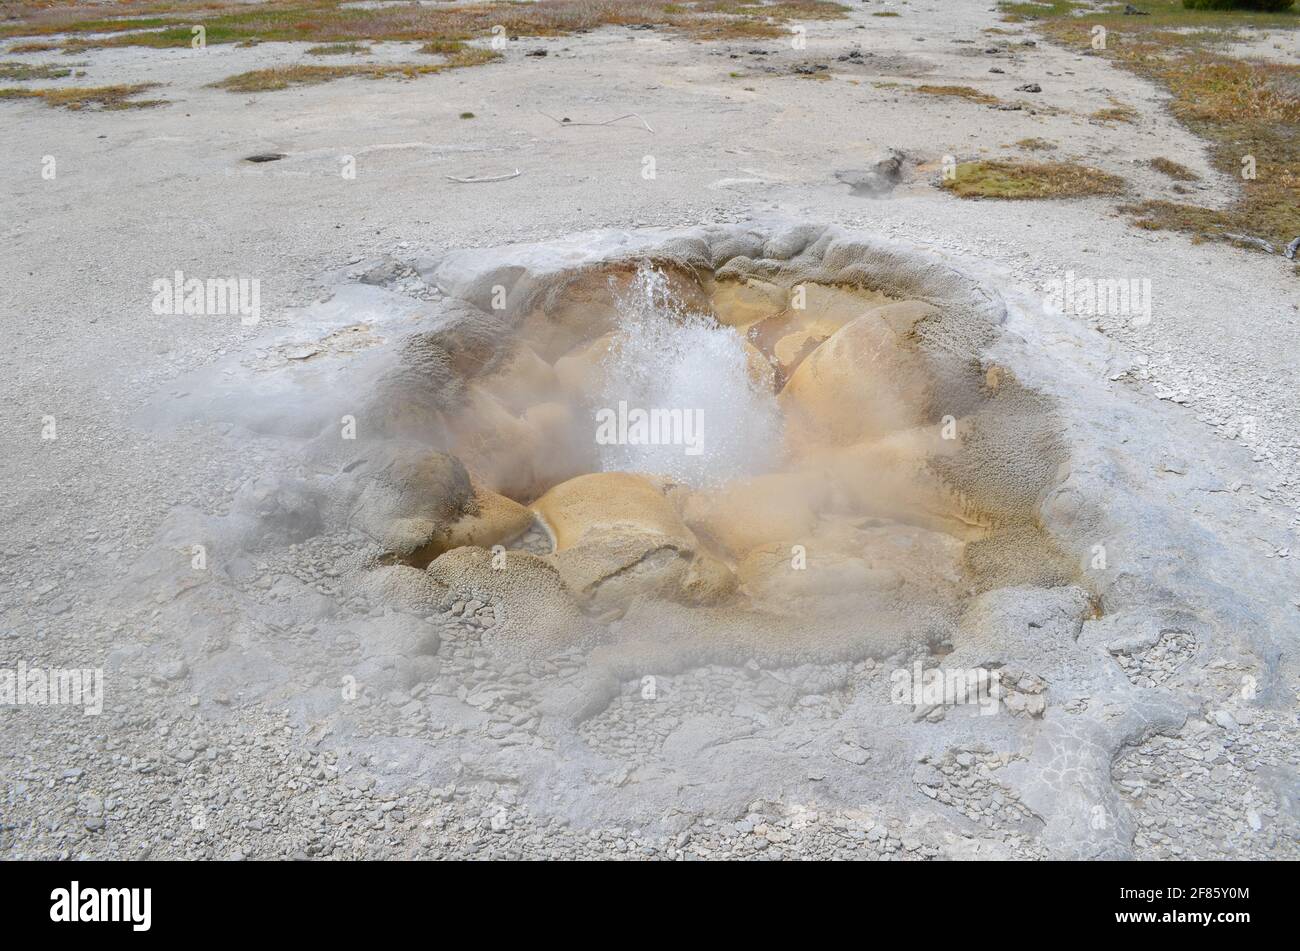 Tarda primavera nel Parco Nazionale di Yellowstone: Gorgogliante Shell Primavera del Gruppo Sapphire nella zona del Bacino Biscuit del Bacino superiore Geyser Foto Stock